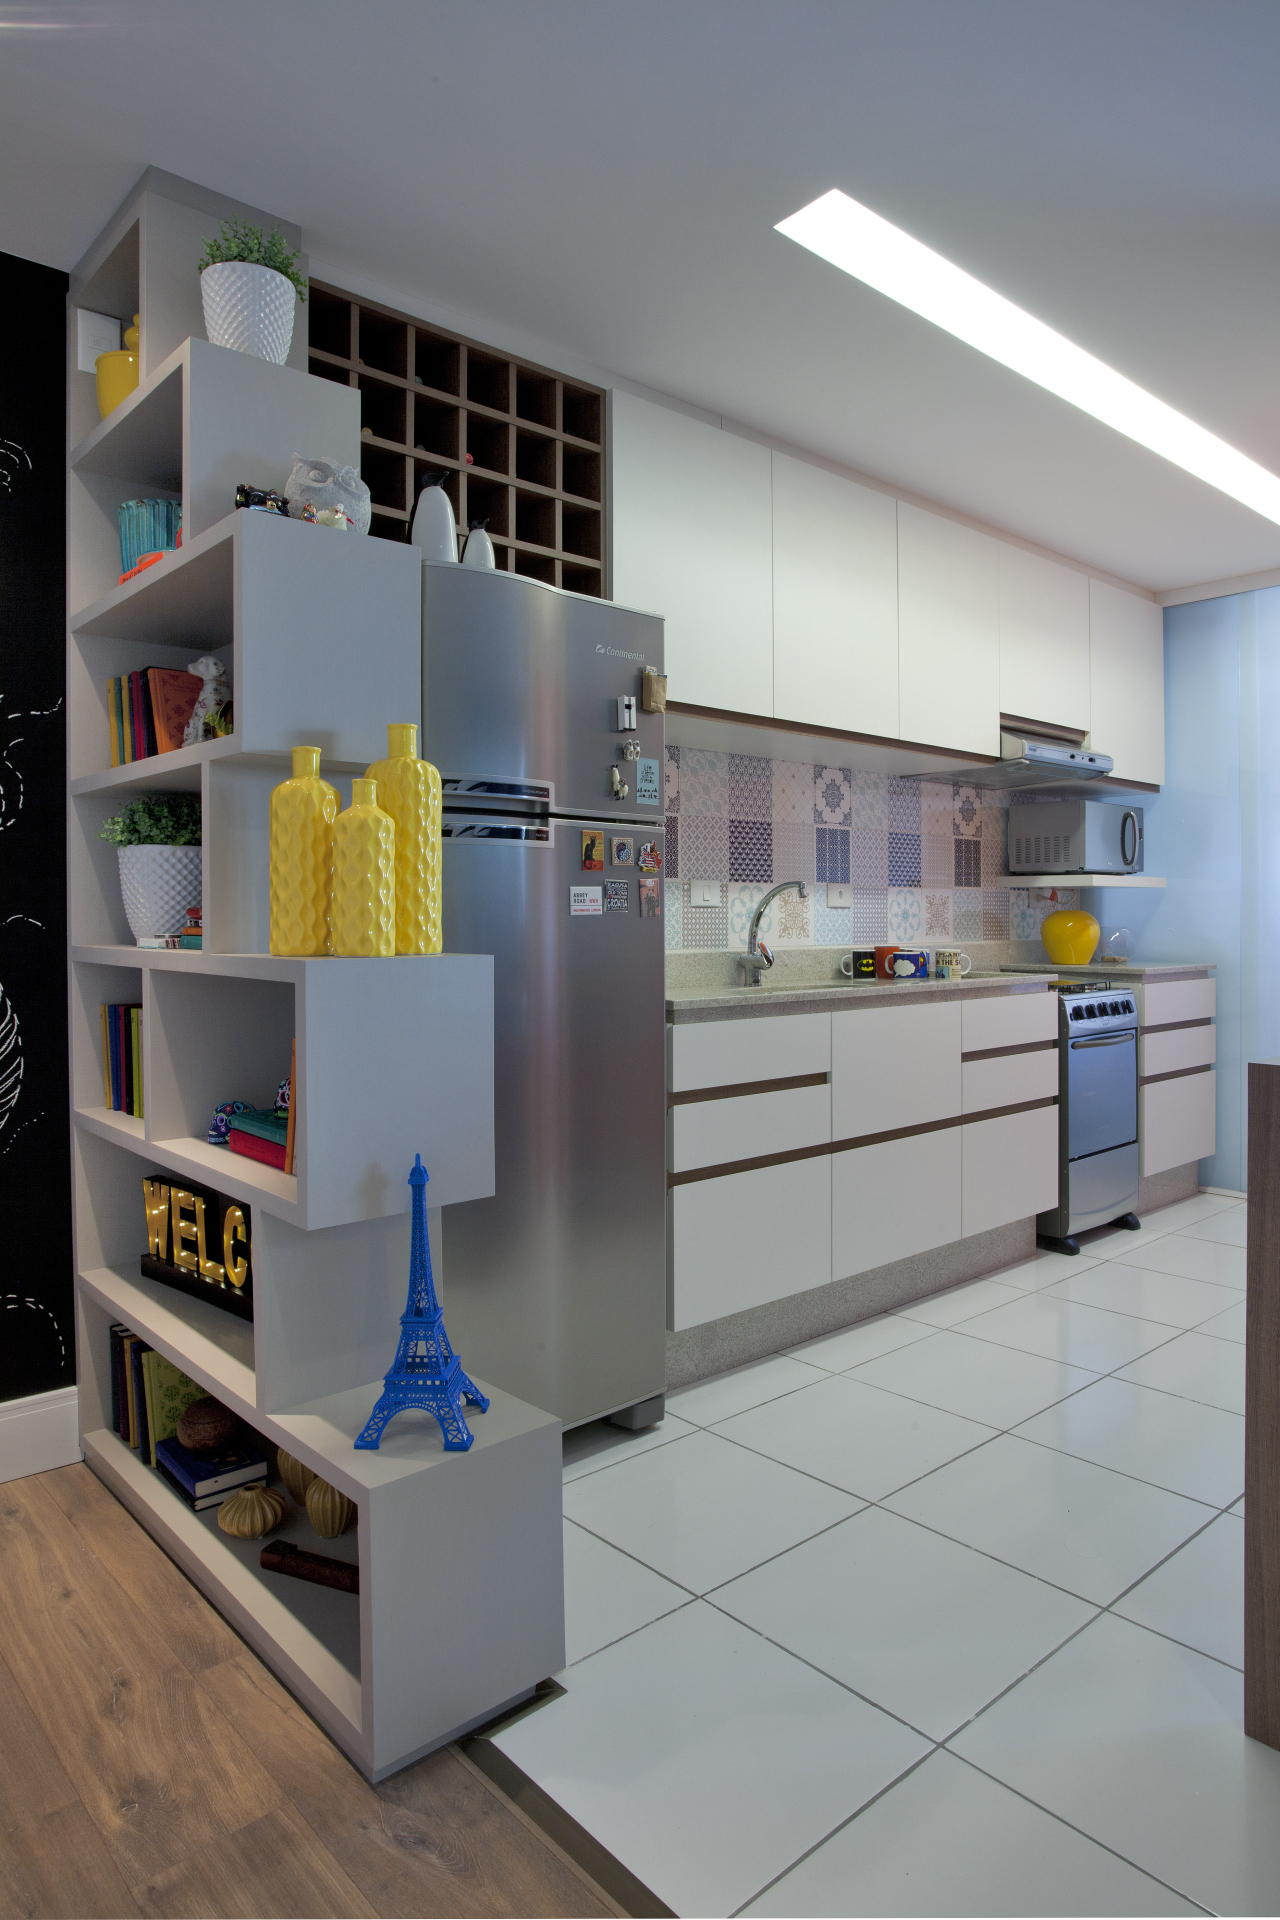 A cozinha é integrada com a área social e  tem cores que conversam com os tons usados na sala.